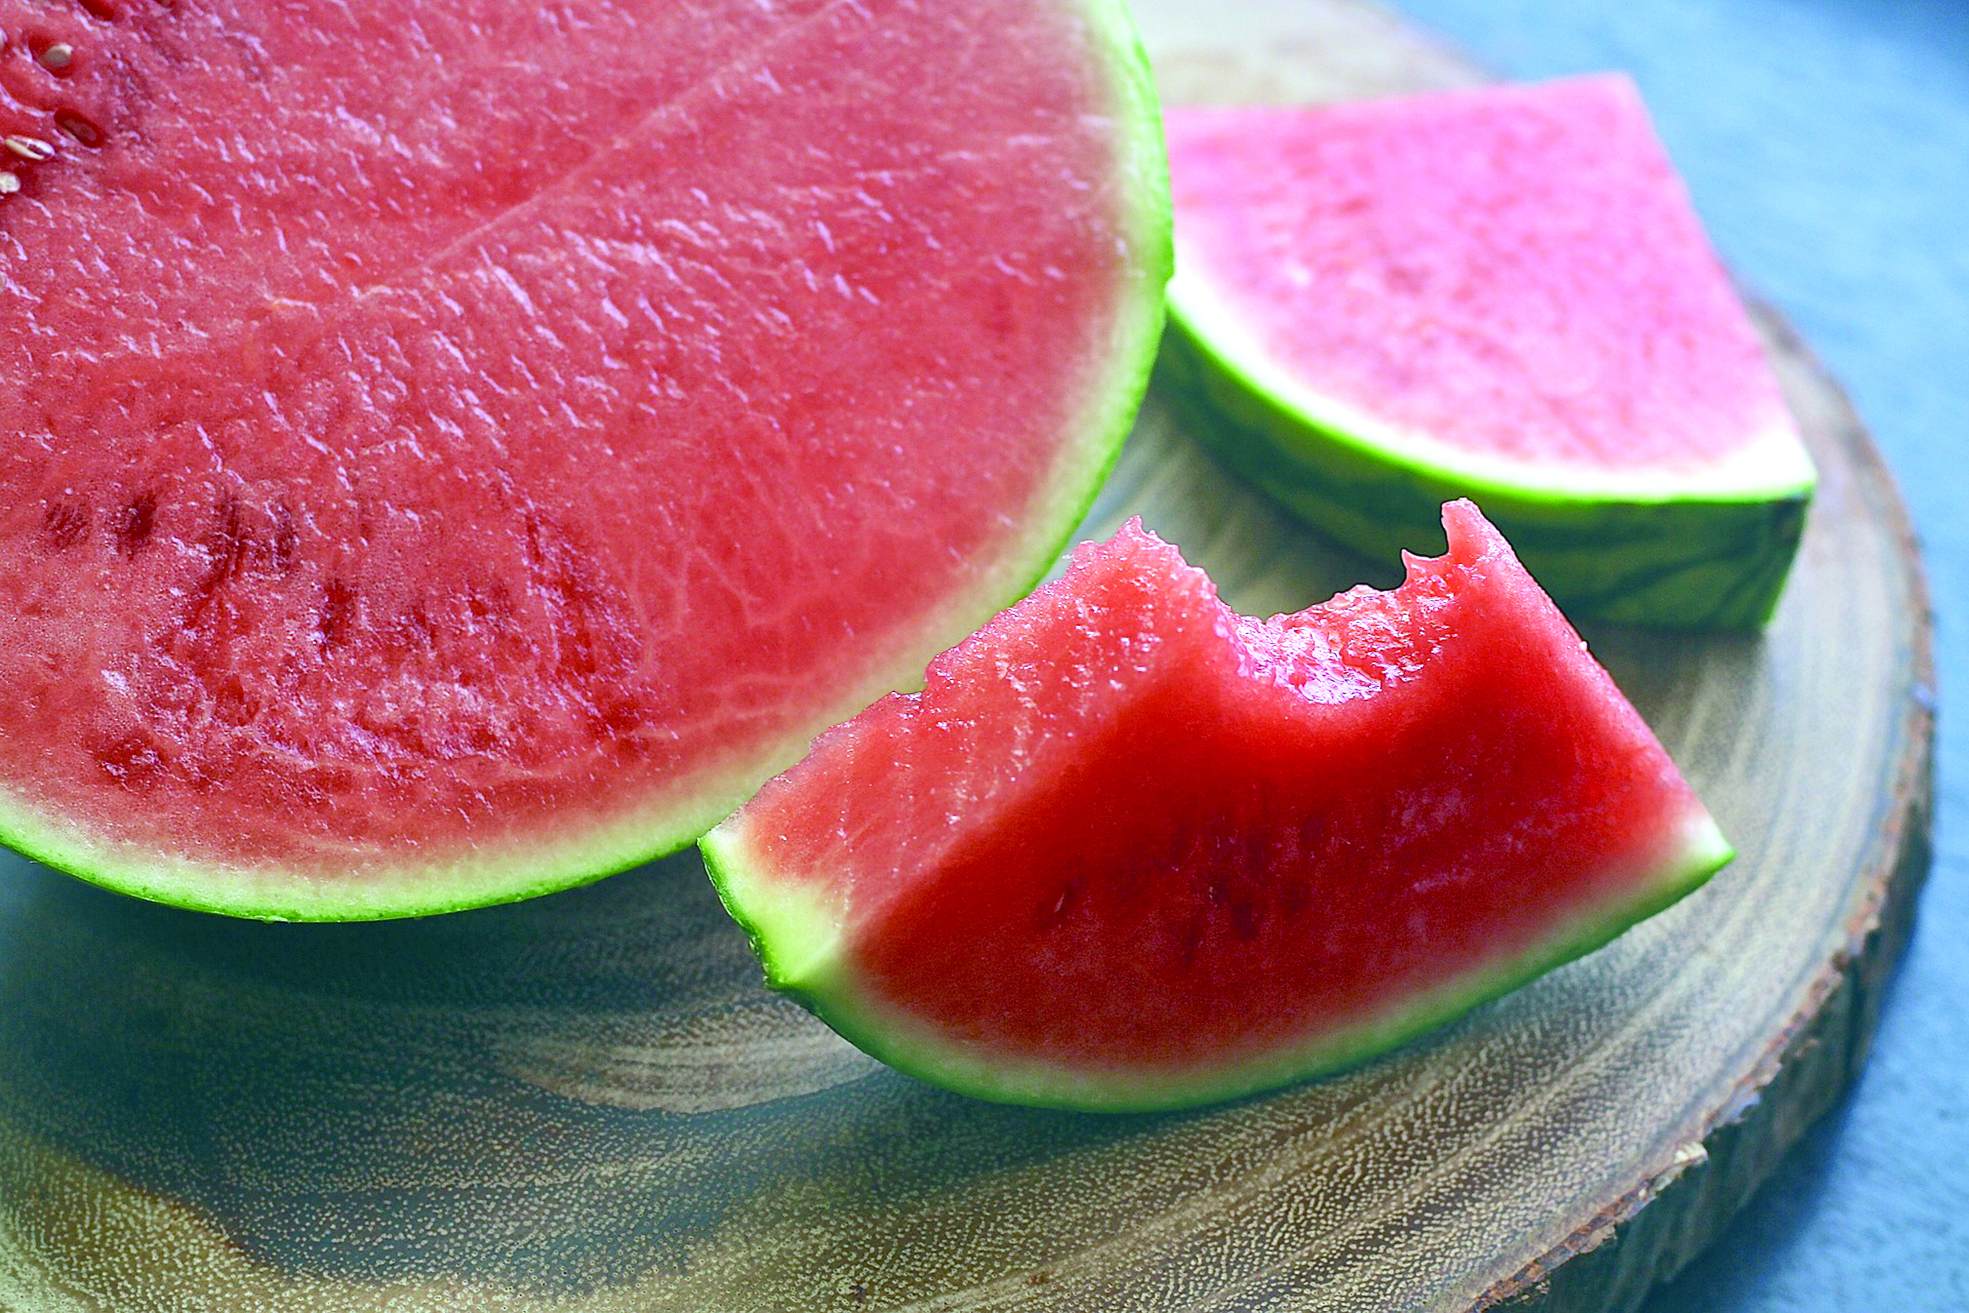 فوائد البطيخ الأحمر للبشرة - الشبيبة | آخر أخبار سلطنة عمان المحلية وأخبار  العالم